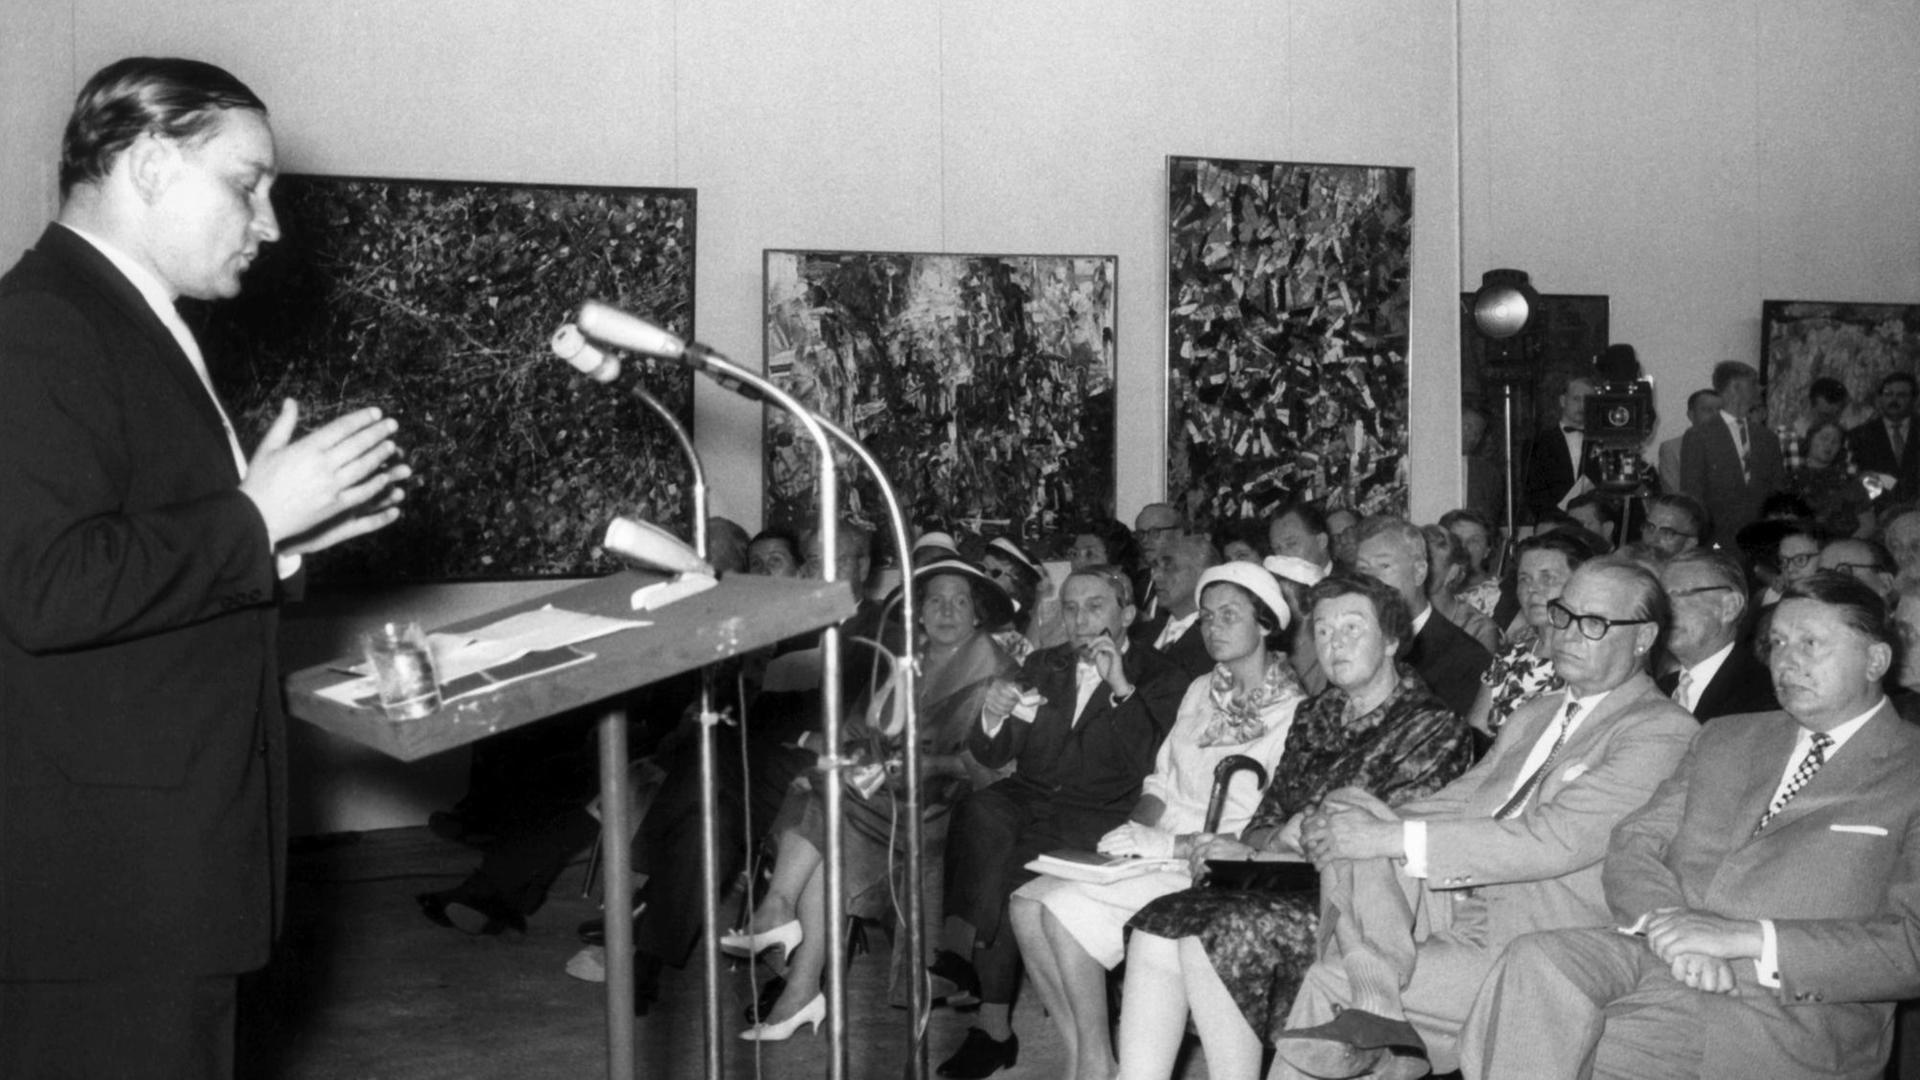 Der Kunsthistoriker Werner Haftmann steht während der Eröffnung der documenta 2 im Jahr 1959 am Rednerpult, im Publikum unter anderem sein Kollege Arnold Bode.